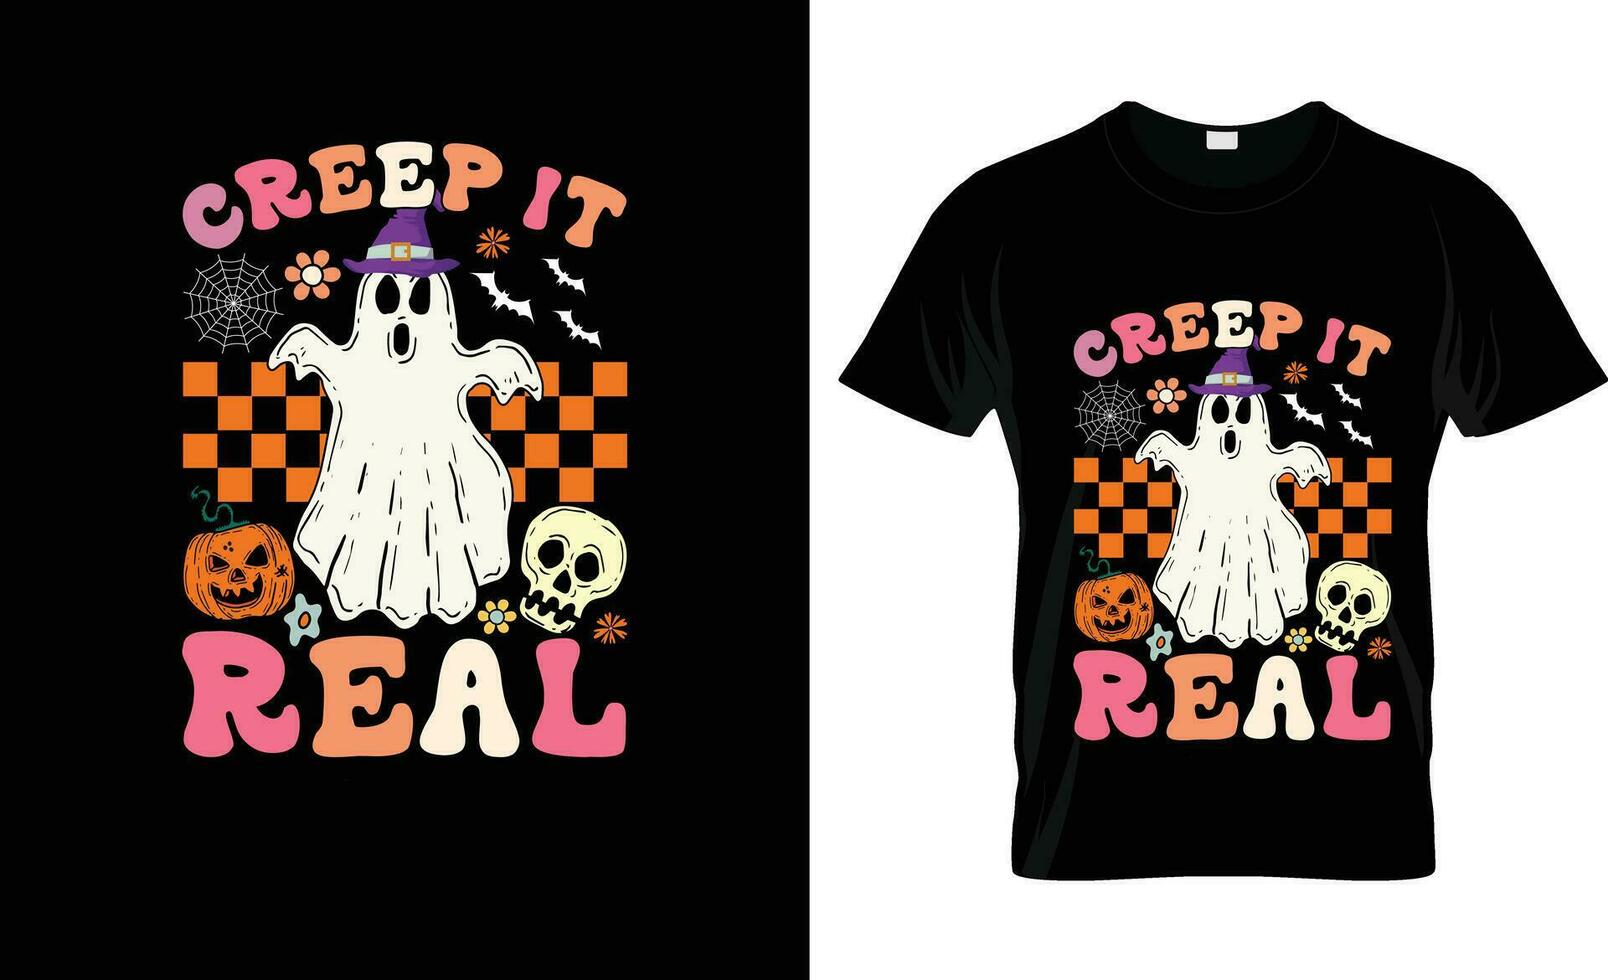 Creep It Real colorful Graphic T-Shirt,t-shirt print mockup vector